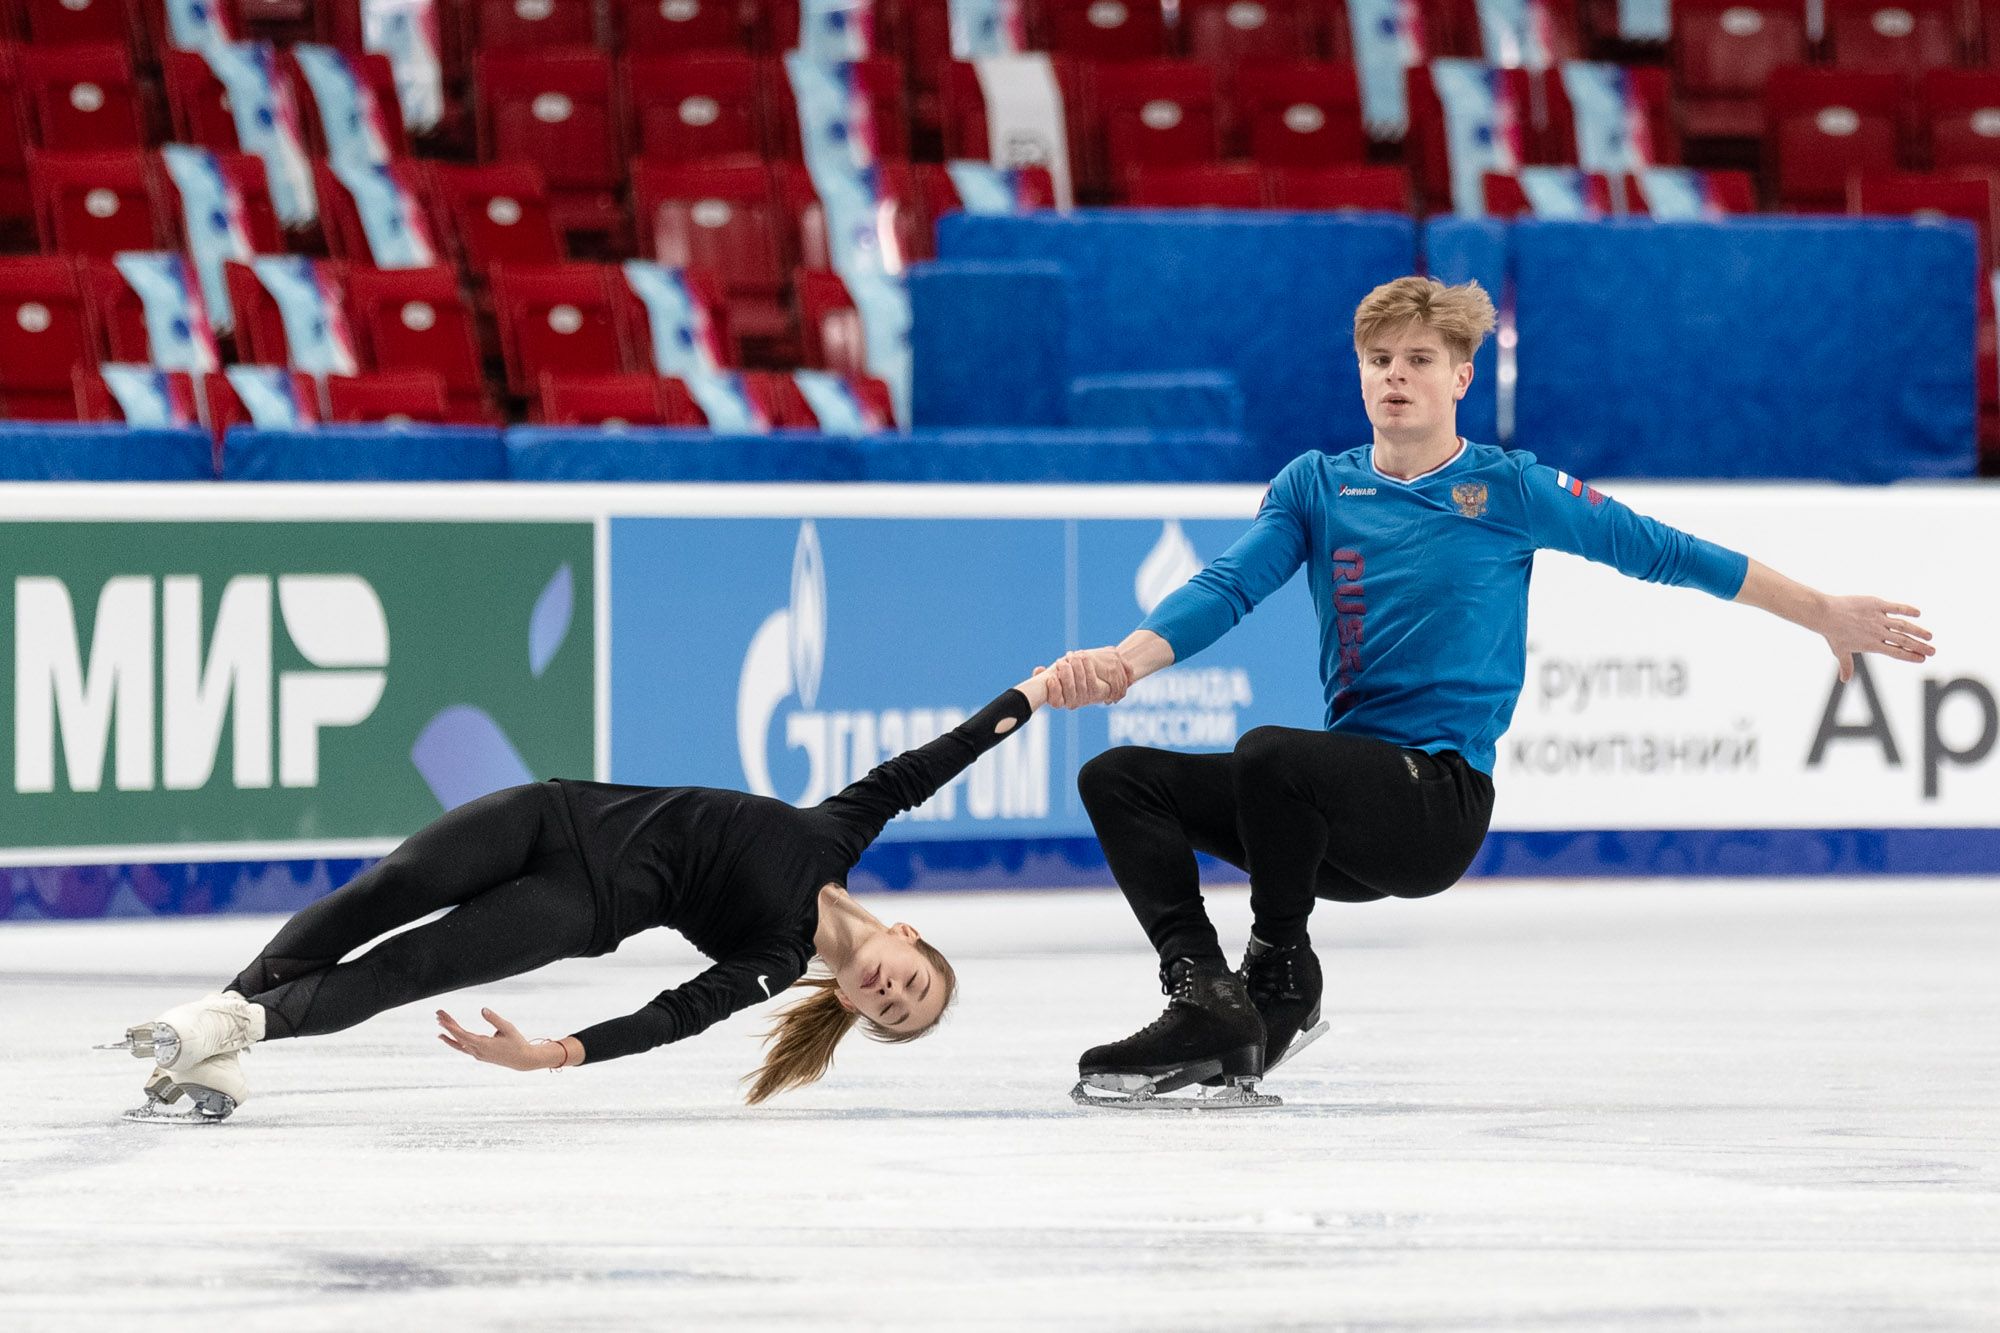 Открытие чемпионата России по фигурному катанию на коньках состоится в Челябинске сегодня